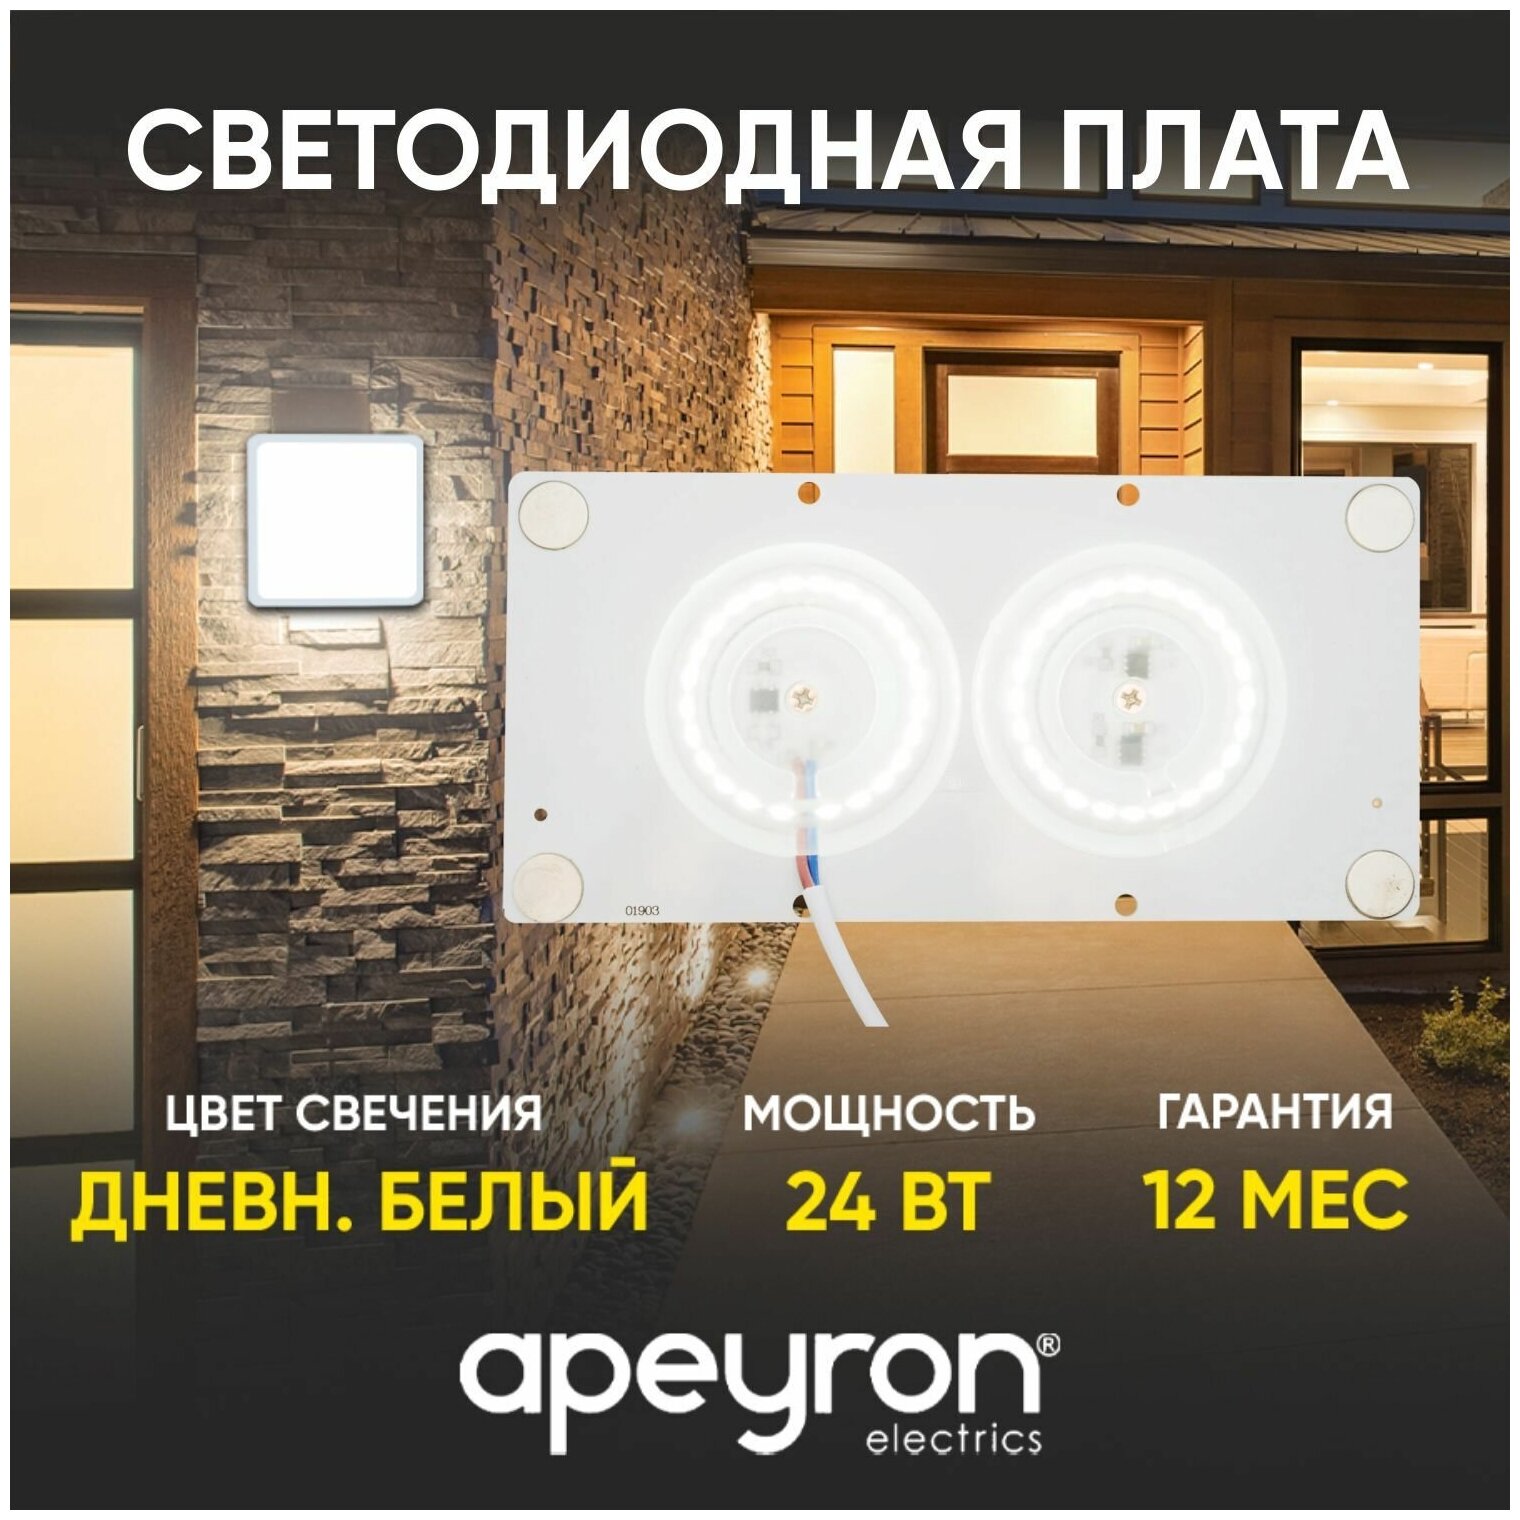 Плата светодиодная для интерьерного света Apeyron 02-22 мощностью 24 Ватт. Влагозащита IP20, цветовая температура 4000К, световой поток 1920 Лм, рабочее напряжение 220В, размер 160х80 мм.